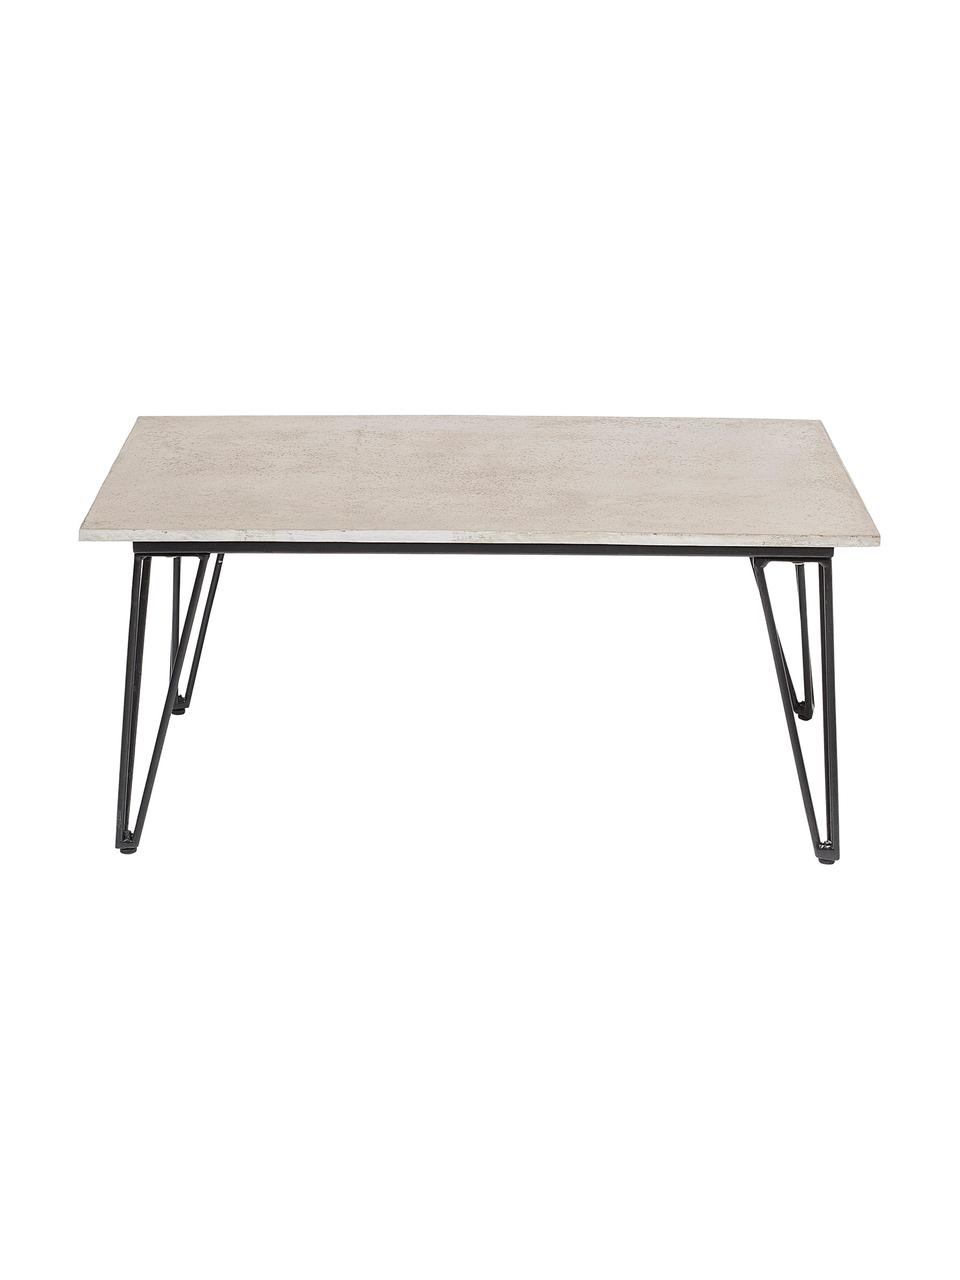 Garten-Couchtisch Mundo, Tischplatte: Beton, Beine: Metall, beschichtet, Grau, Schwarz, B 90 x T 60 cm